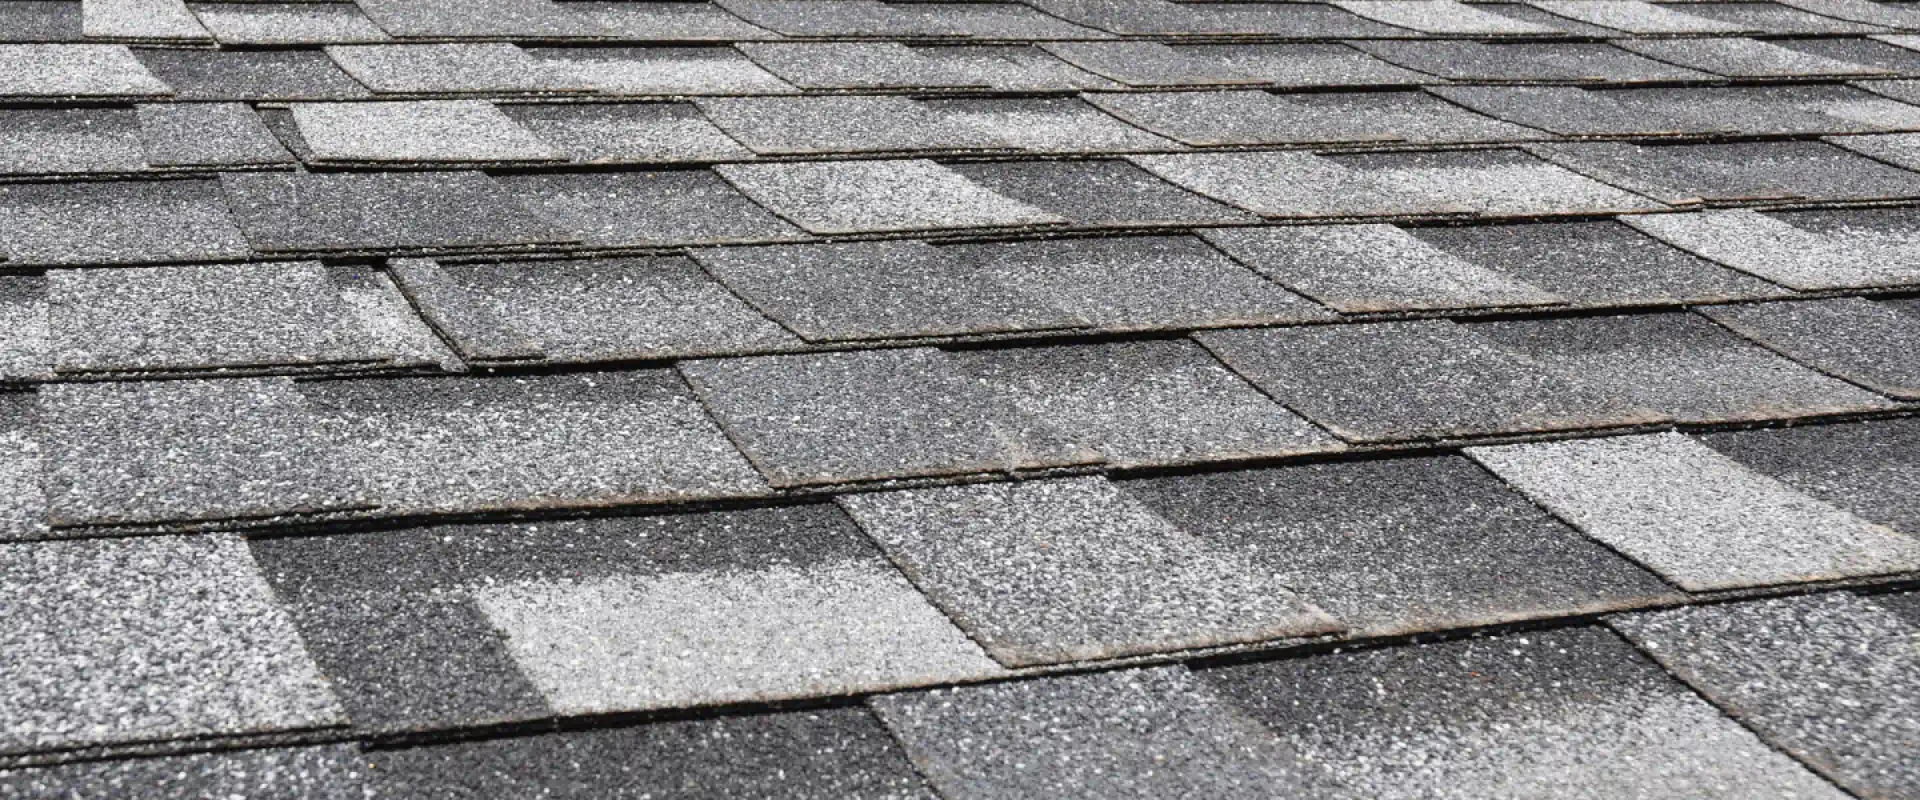 asphalt roofing shingles close up